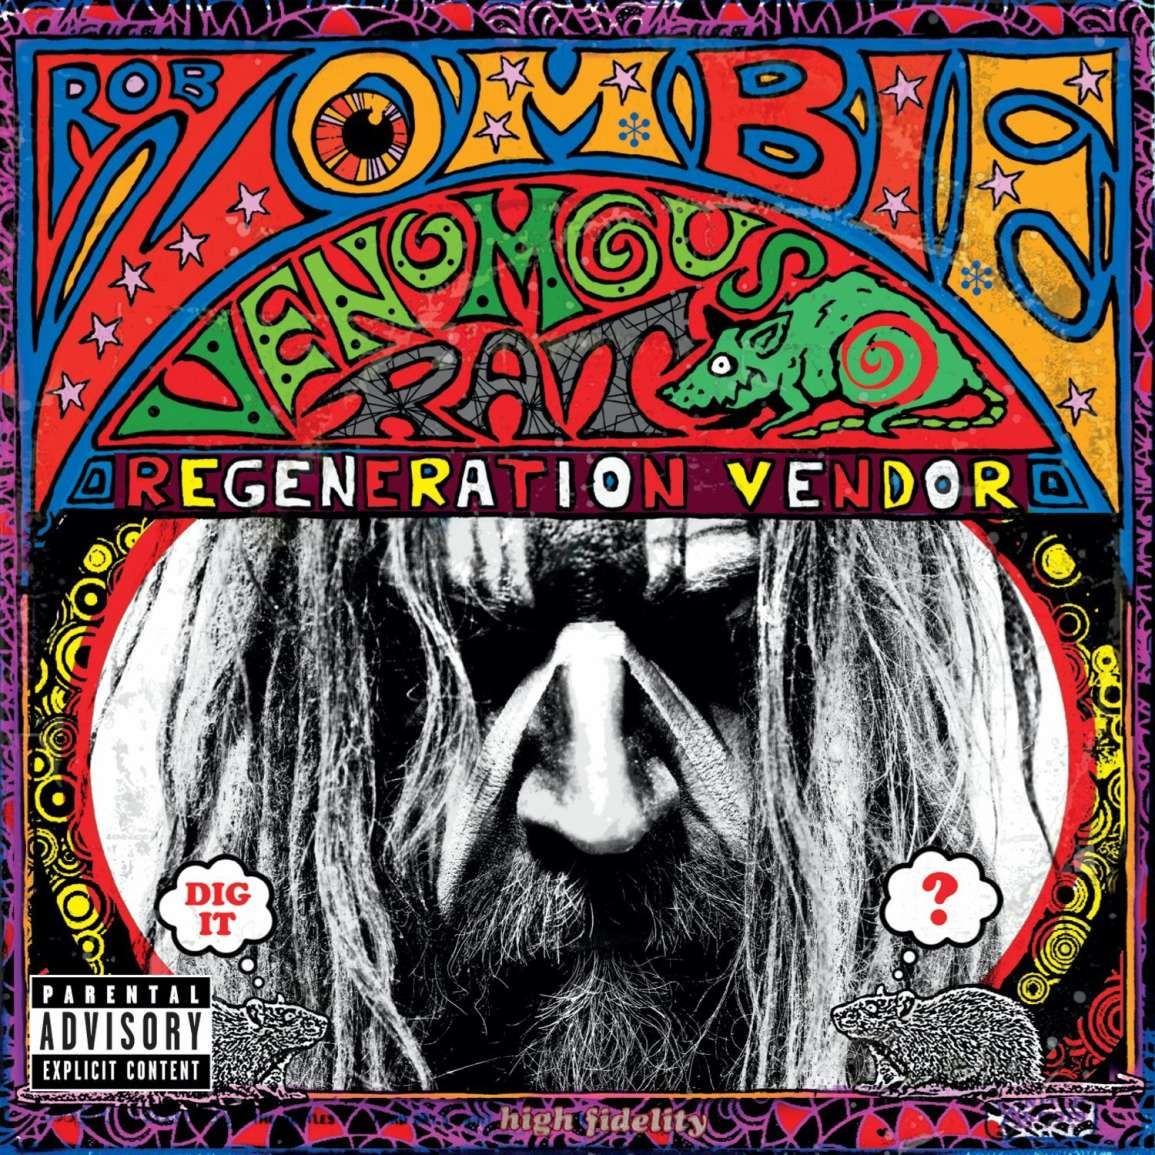 Rob Zombie - Venomous Rat